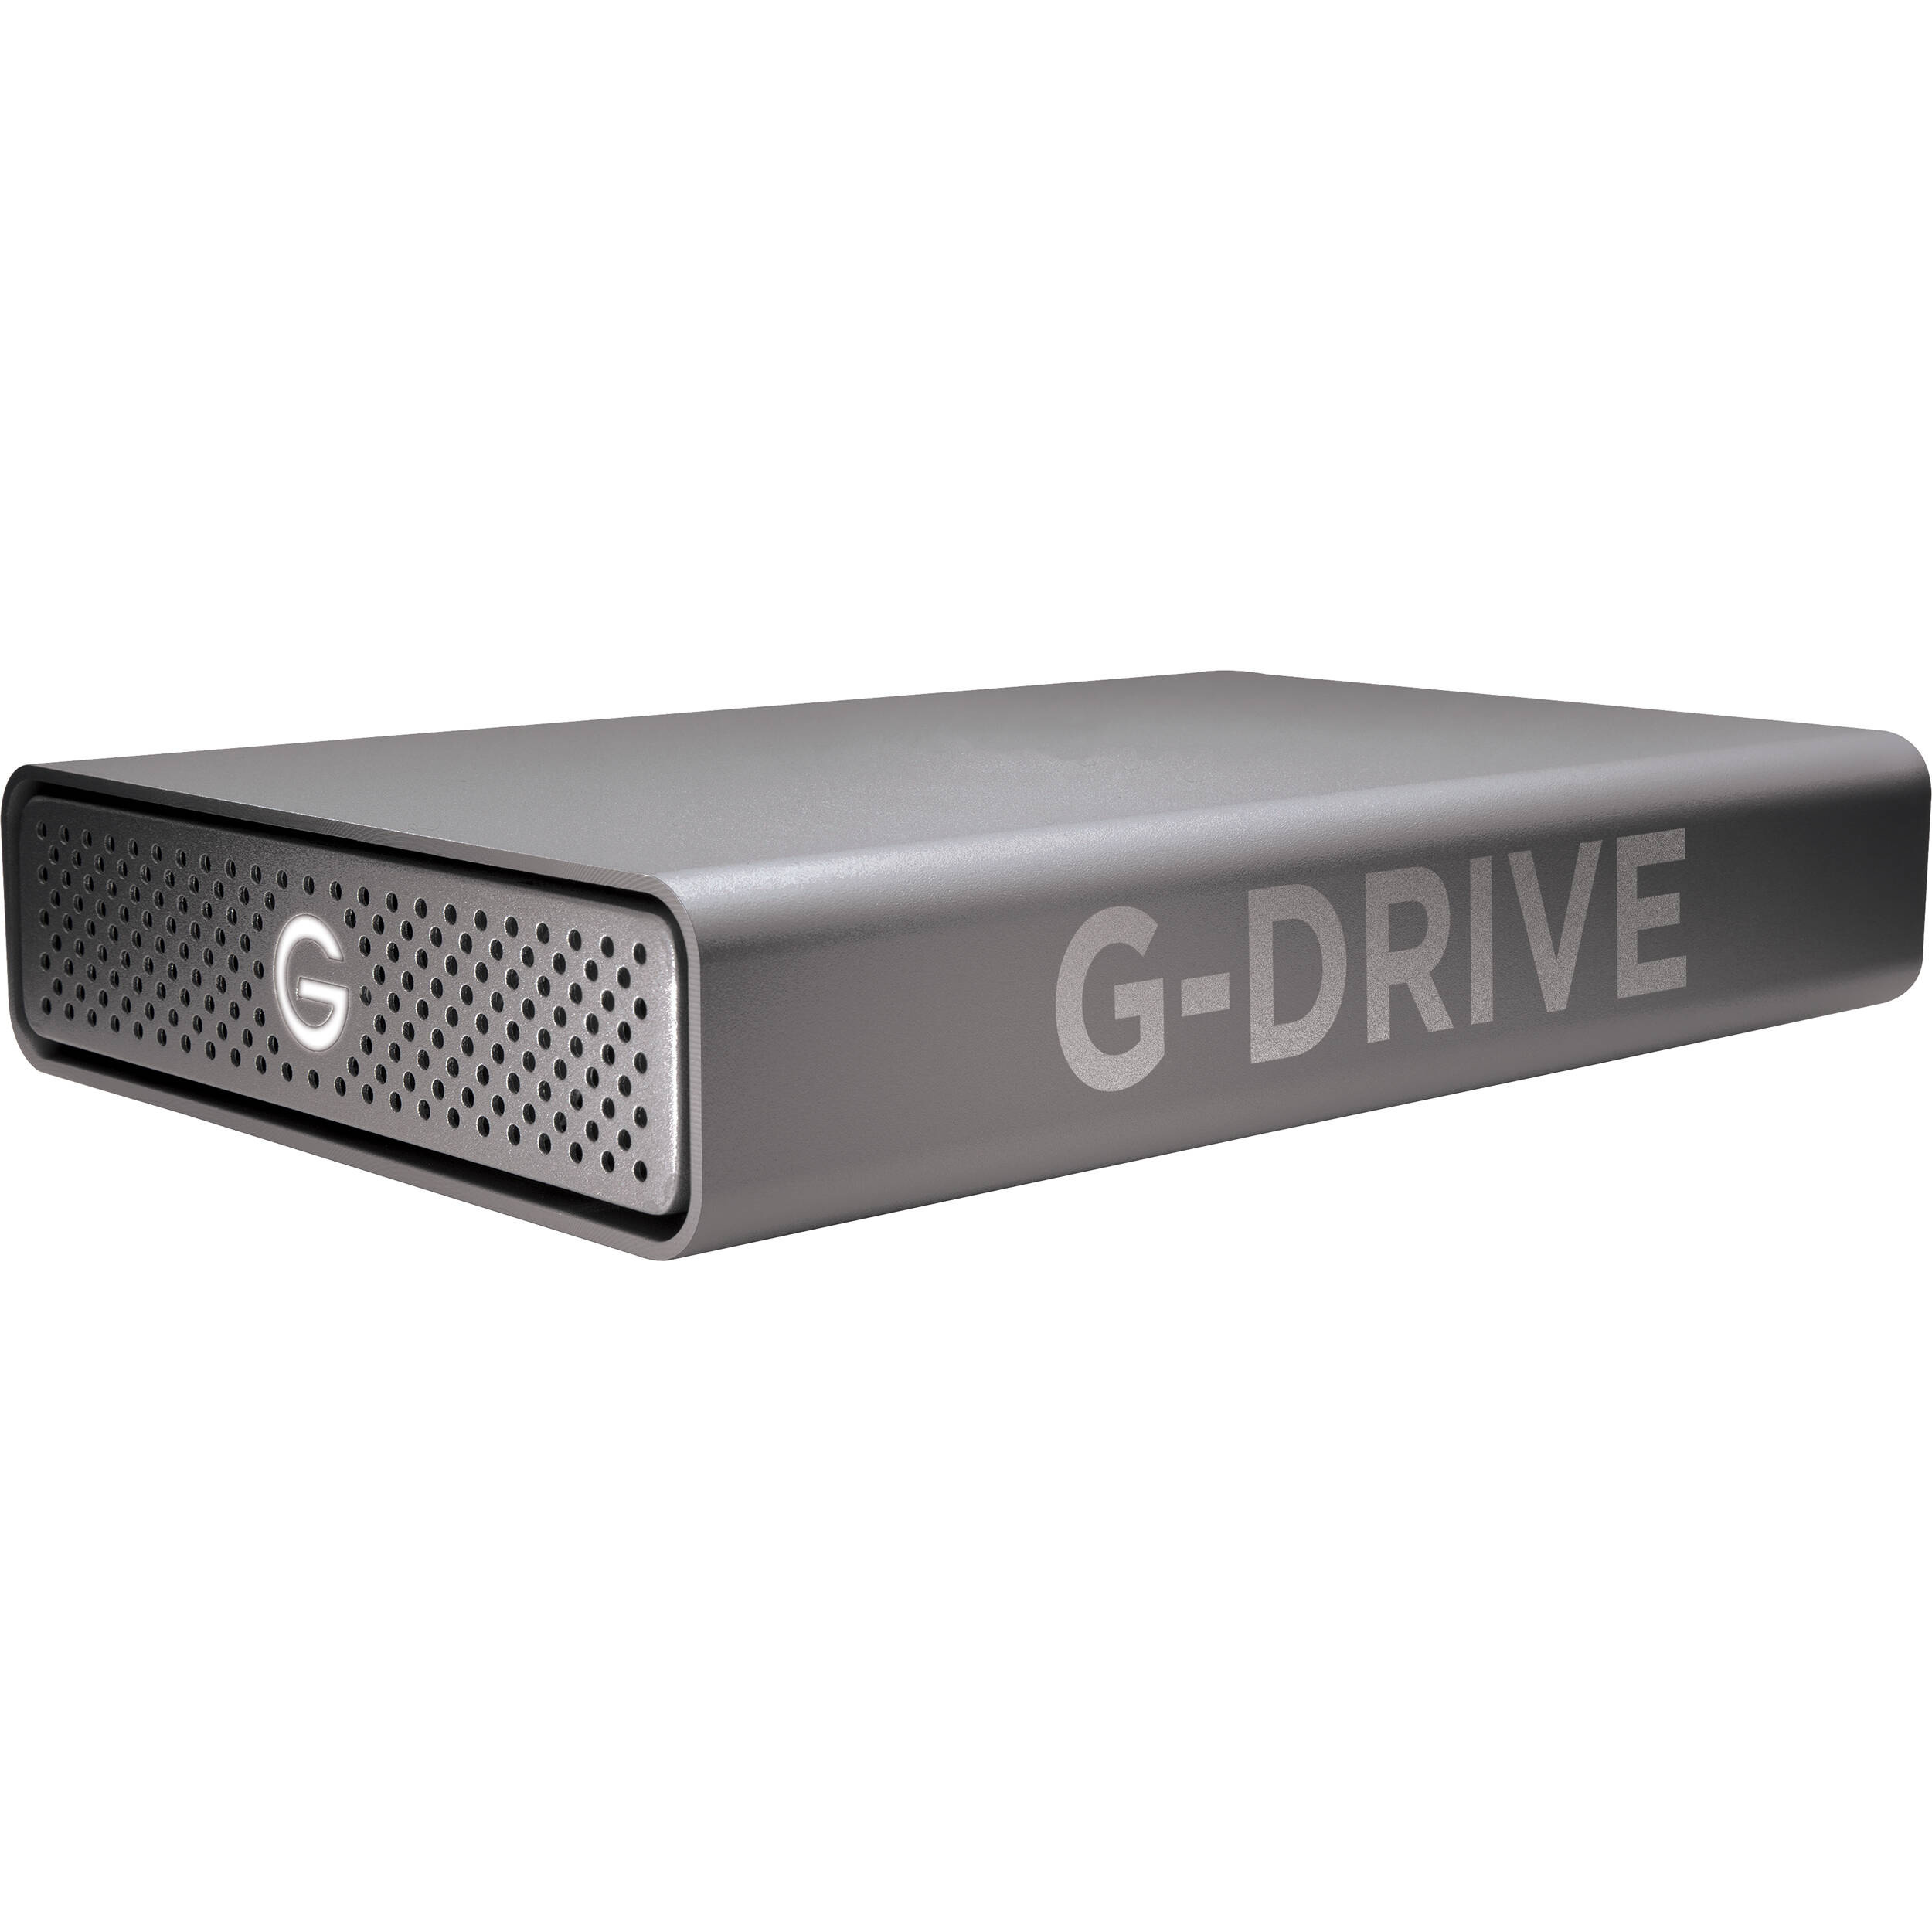 SanDisk Professional 12TB G-DRIVE Enterprise-Class USB 3.2 Gen 1 External Hard Drive